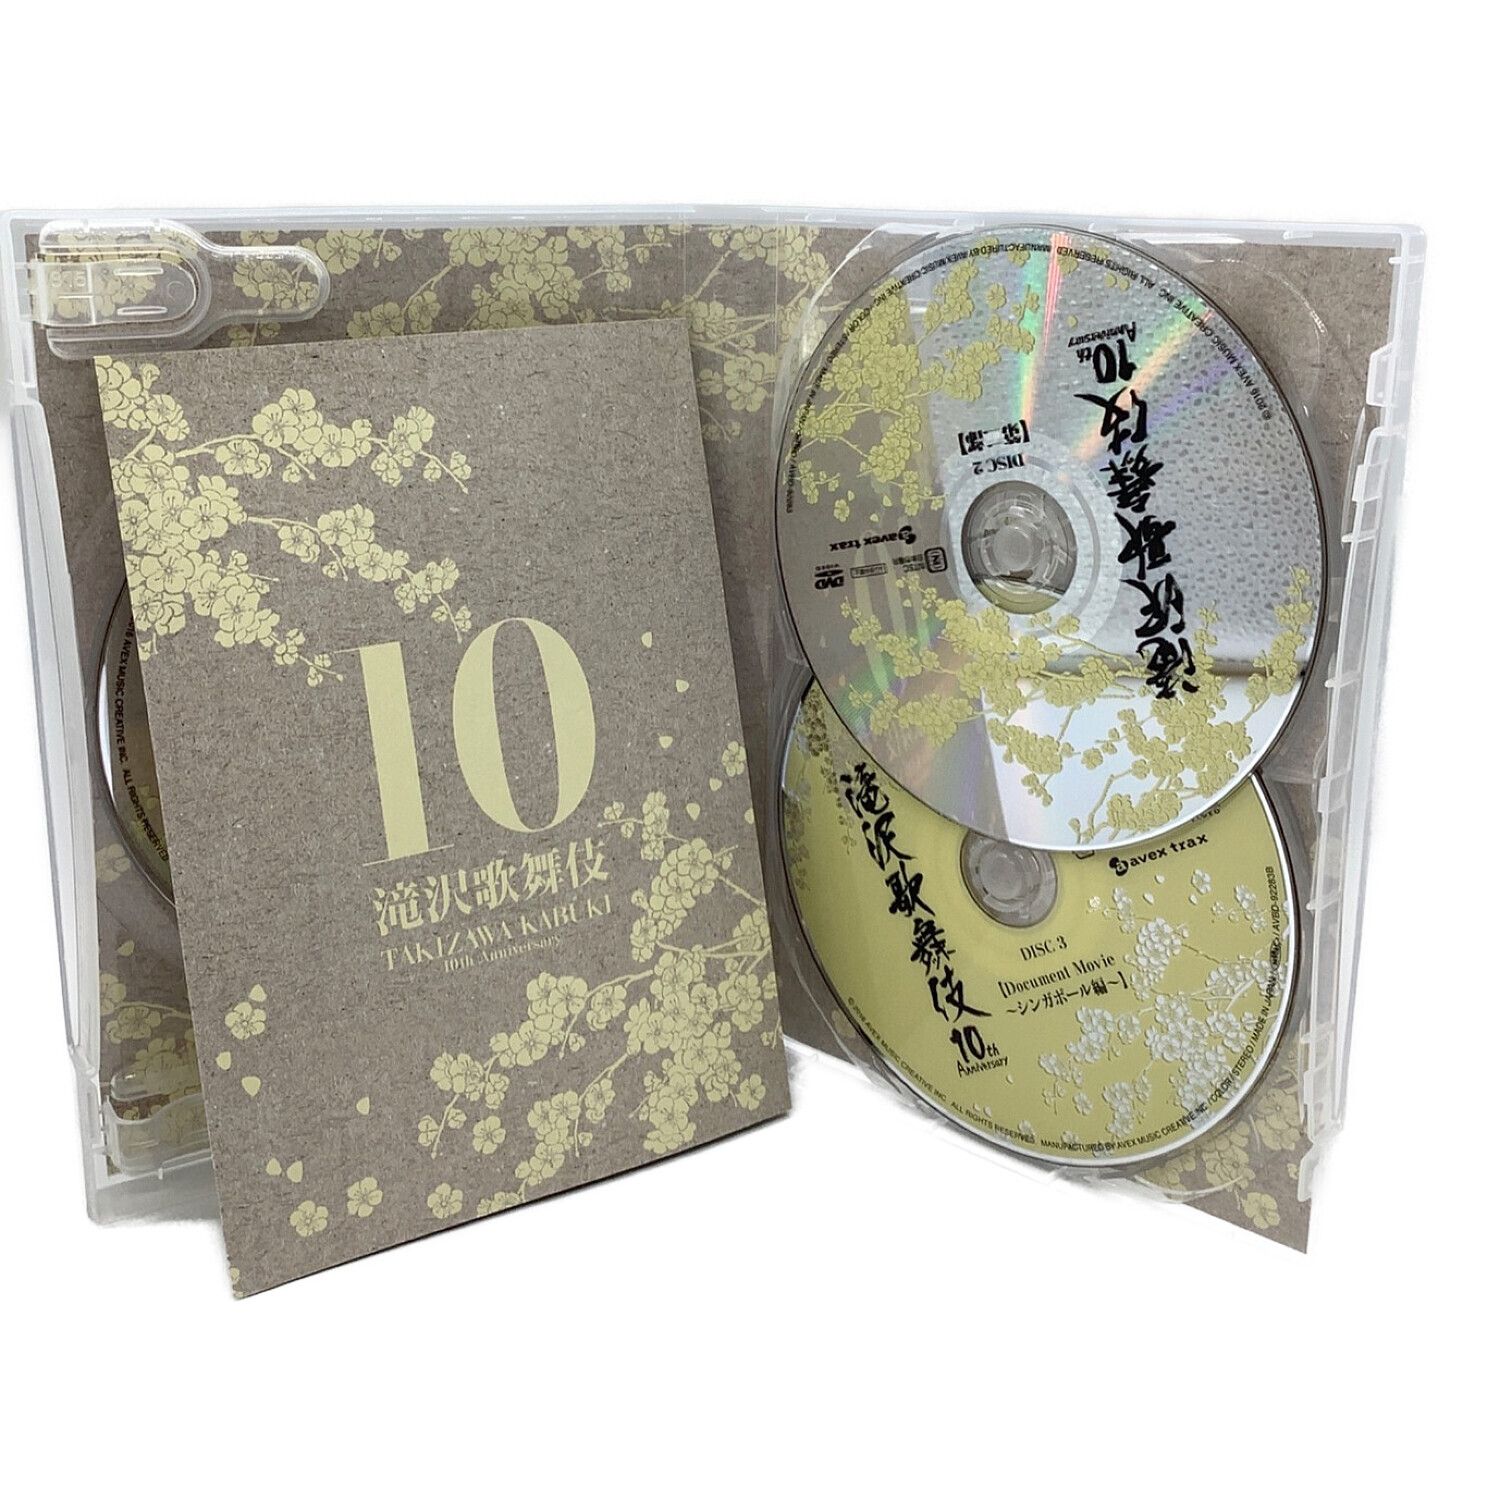 滝沢歌舞伎10th Anniversary シンガポール盤〈3枚組〉 iveyartistry.com